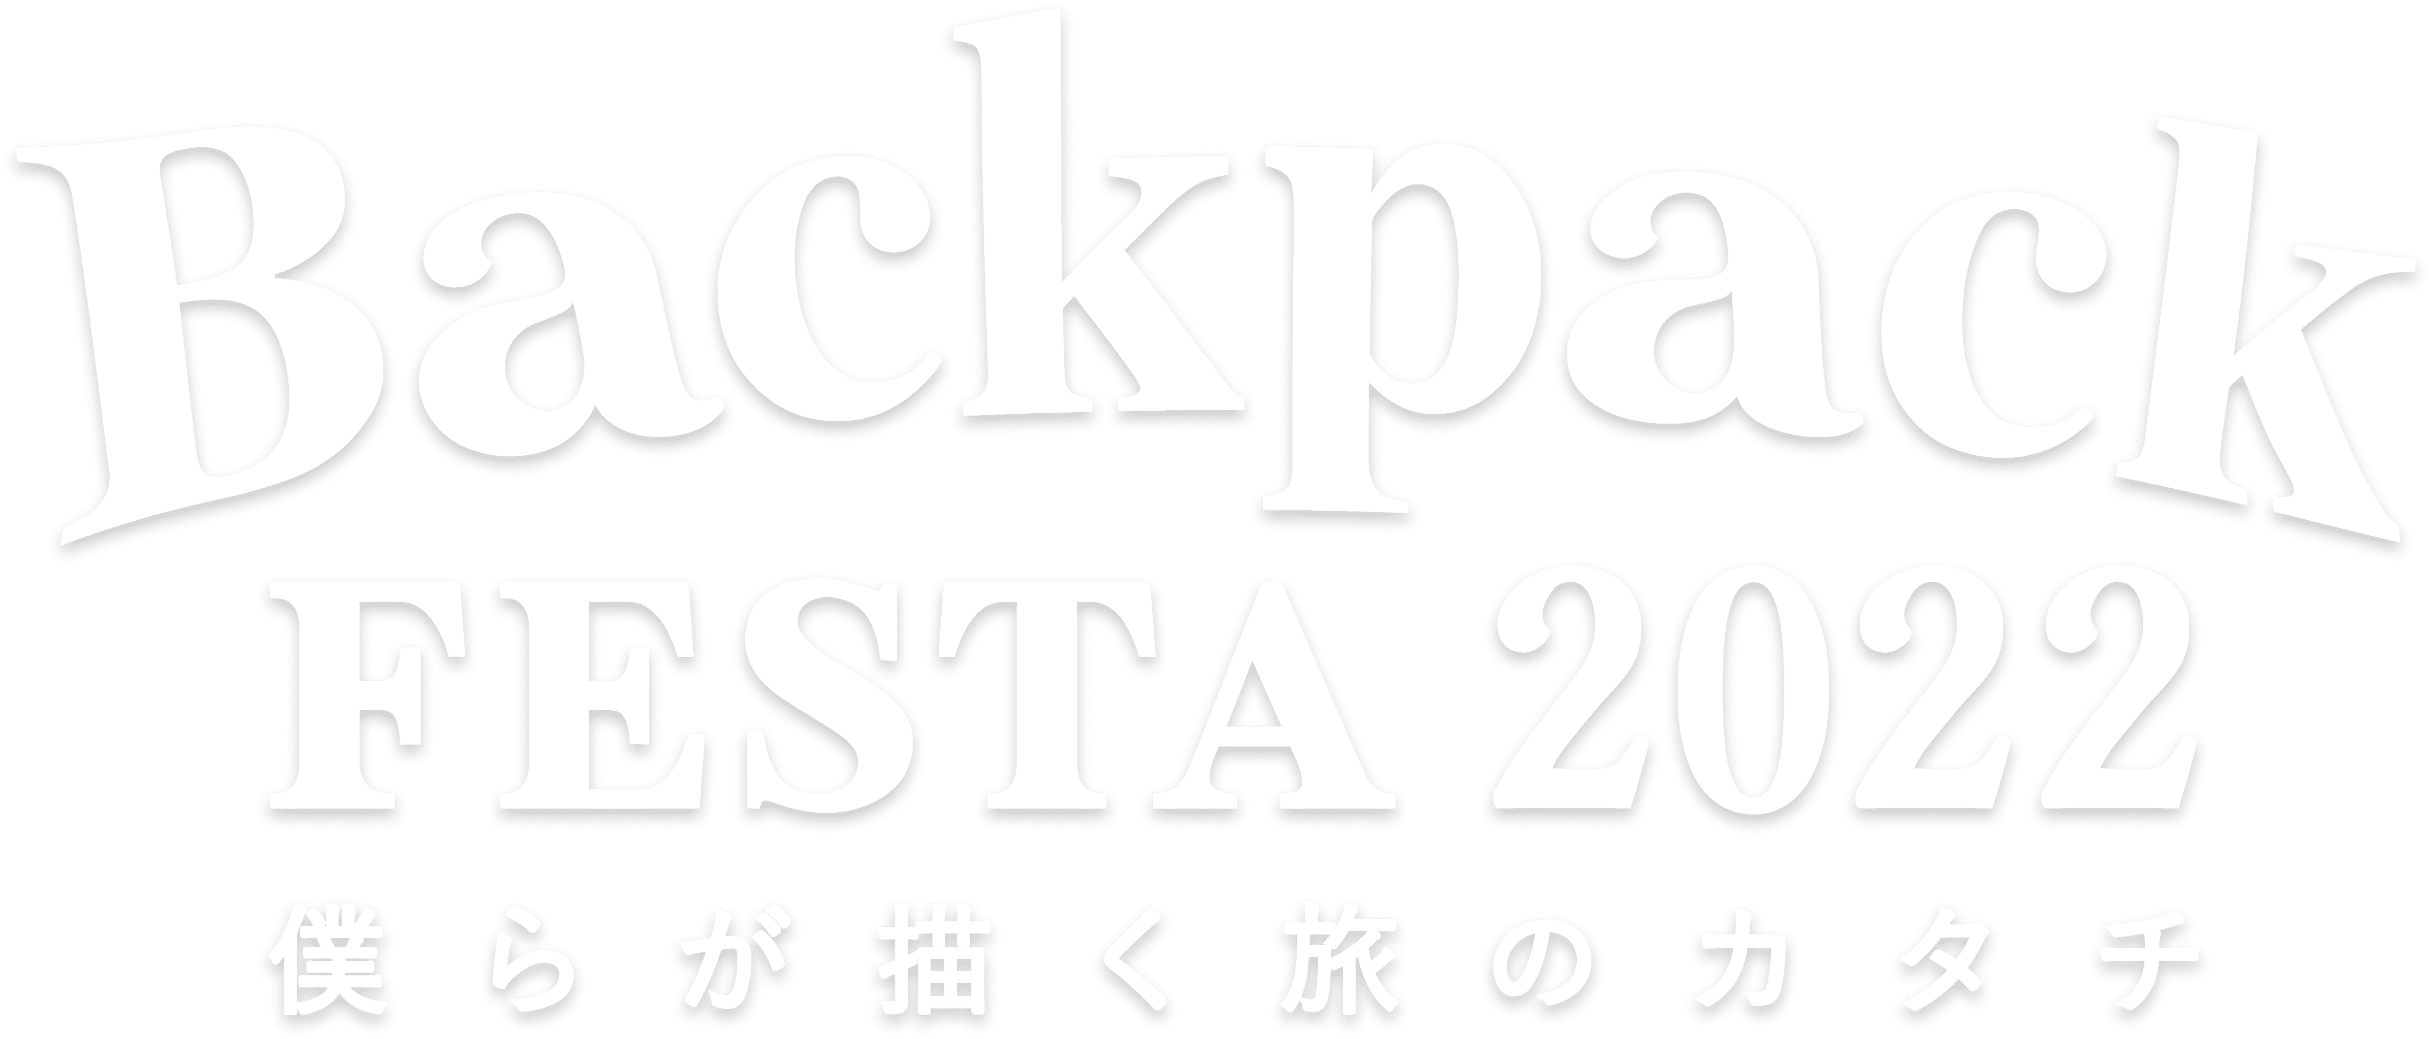 BackpackFESTA2022